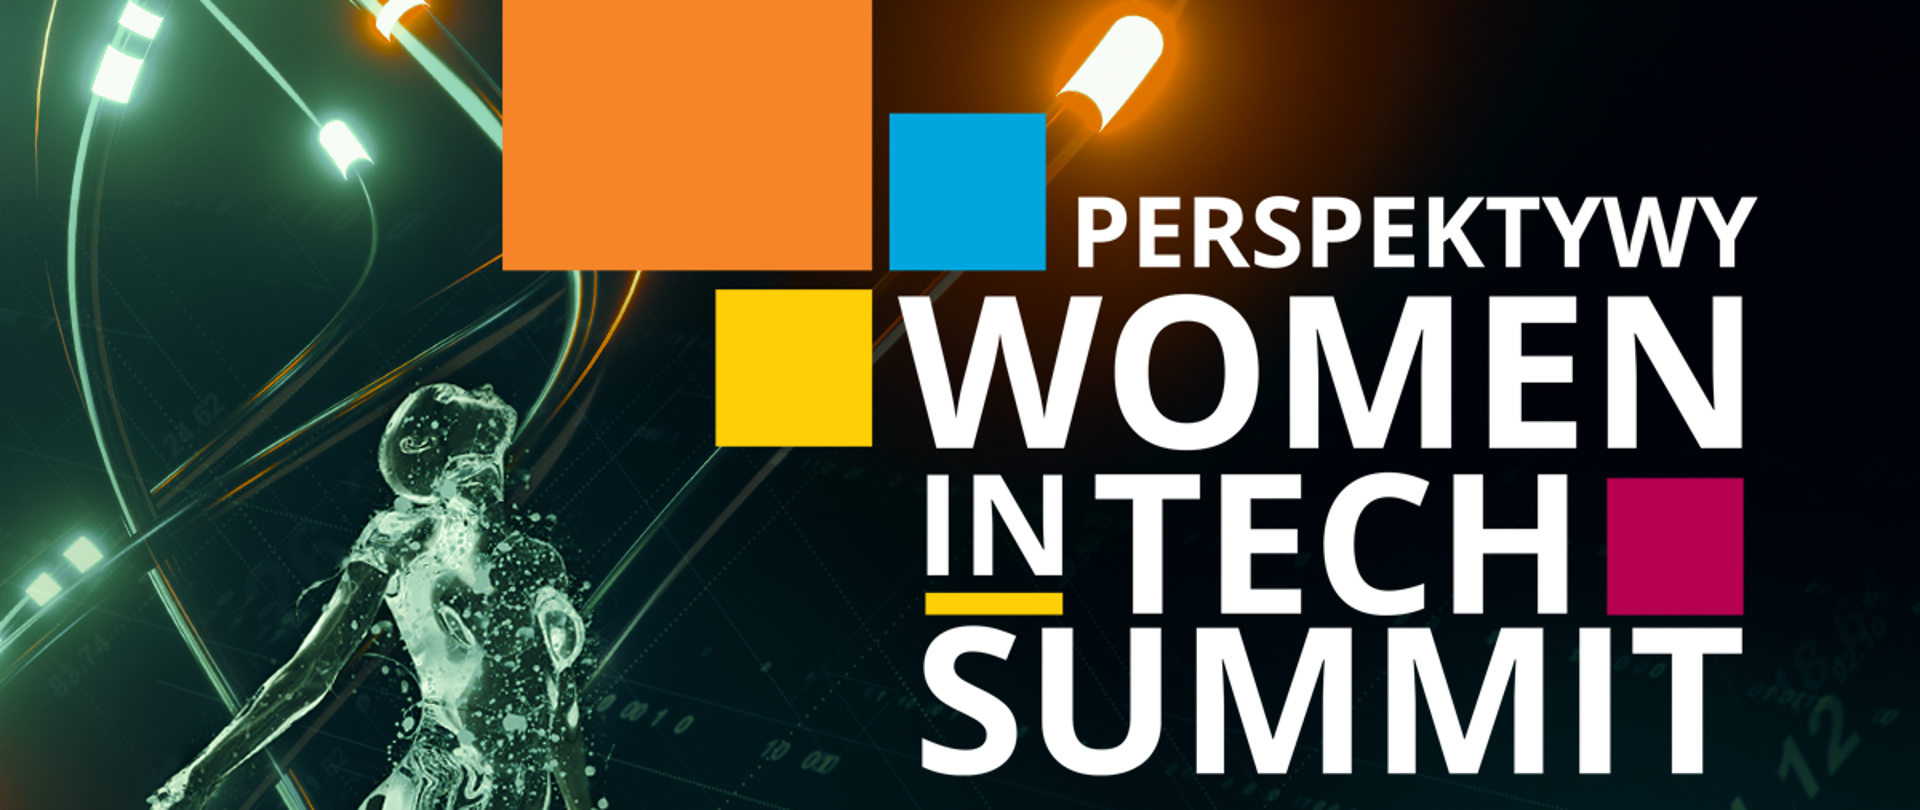 Perspektywy Women in Tech Summit 